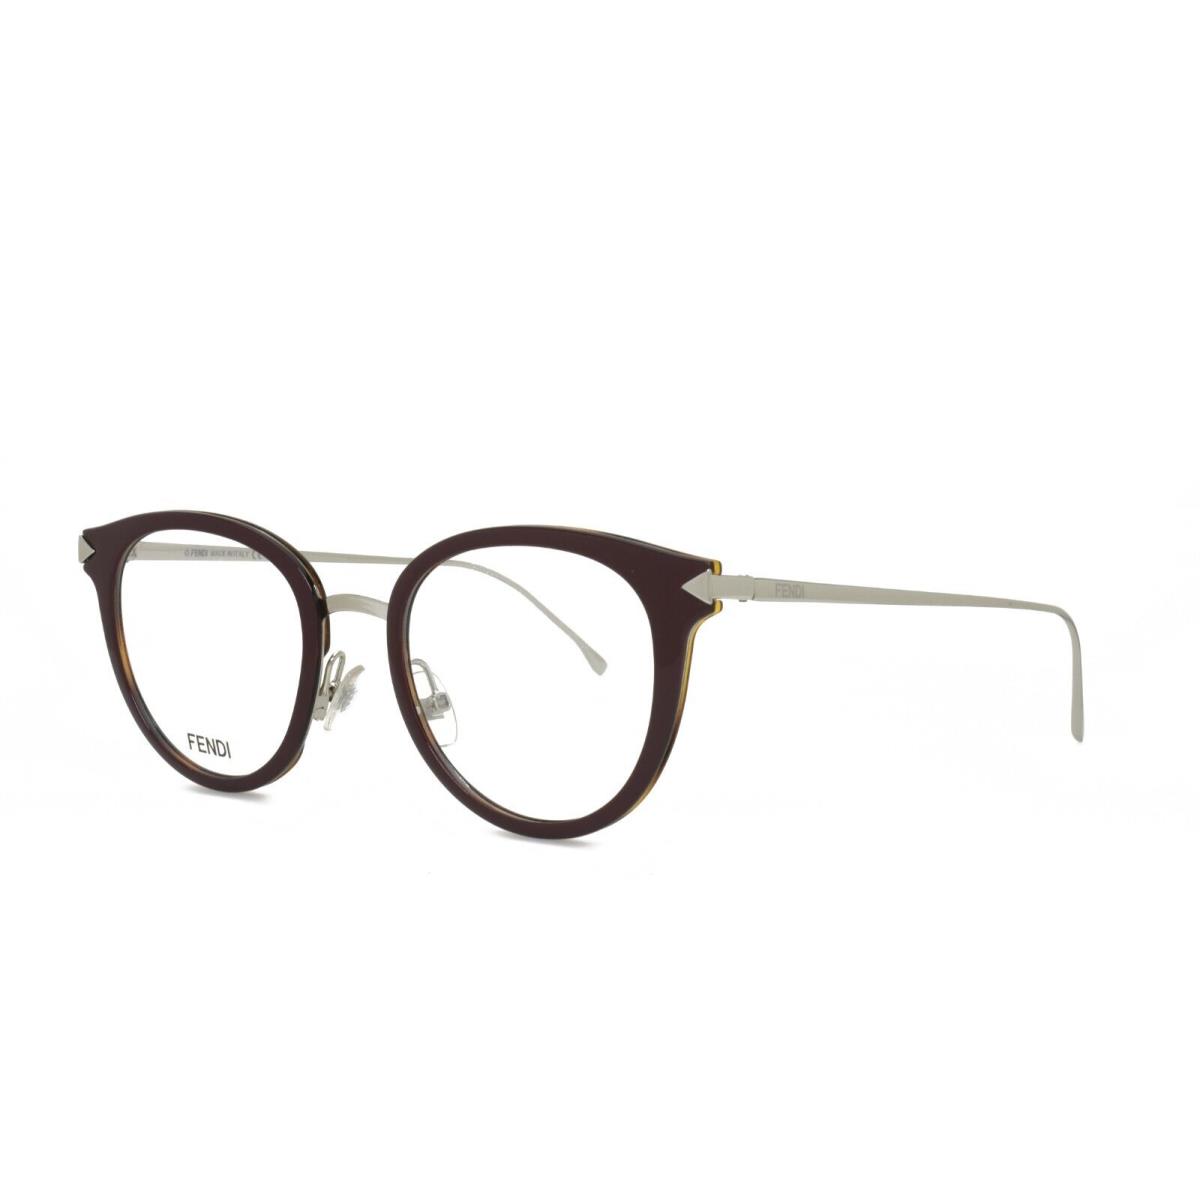 Fendi 0166 V52 48-20-140 Violet Palladium Eyeglasses Frames